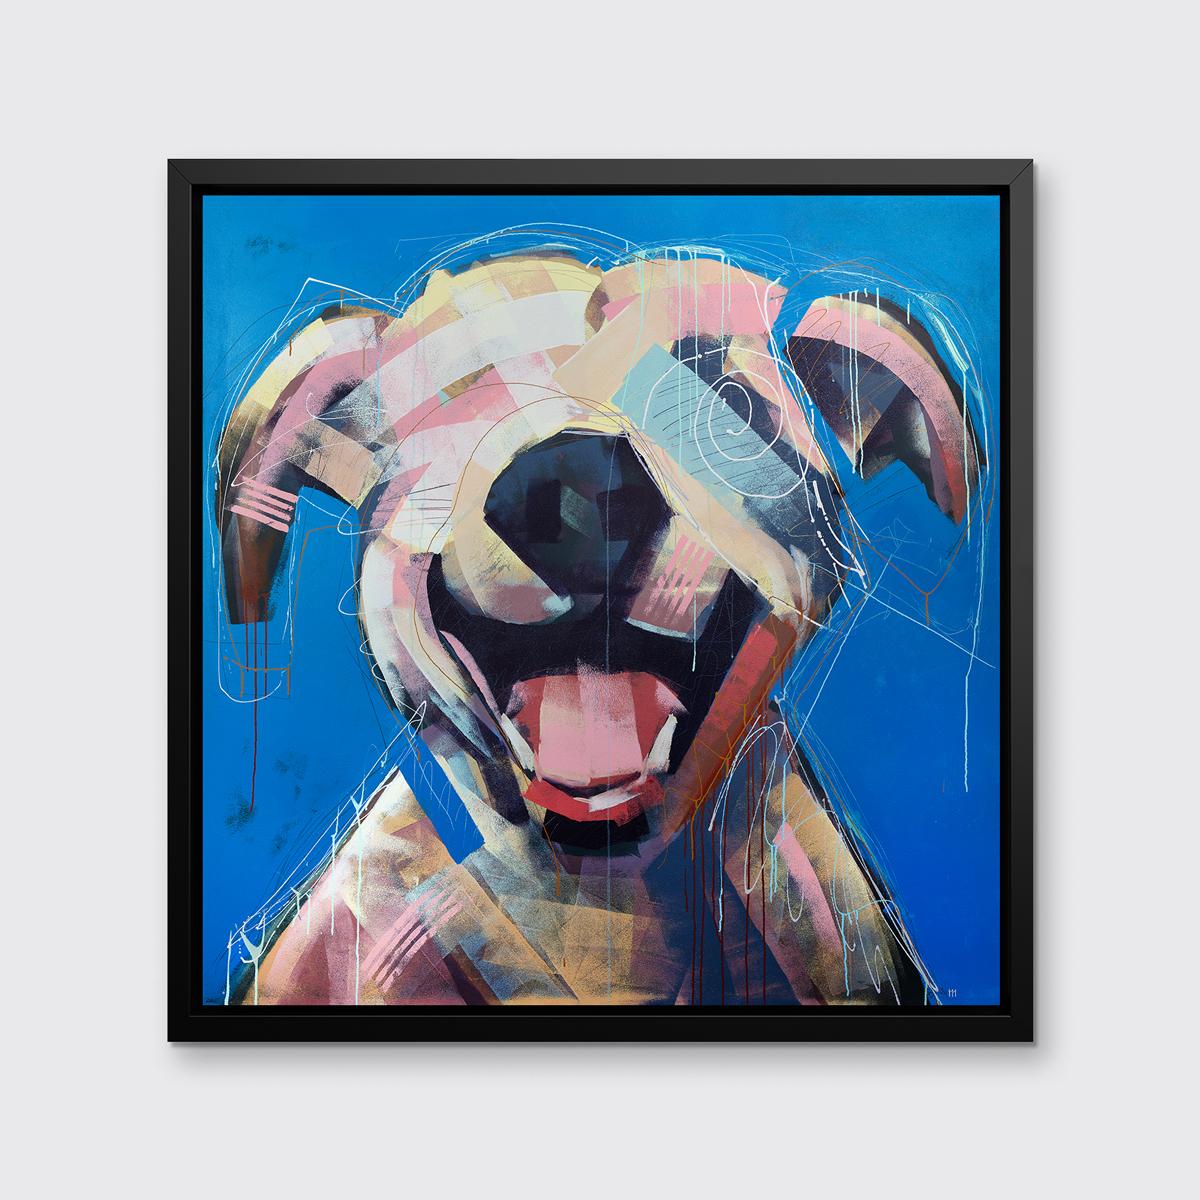 Dieser abstrahierte Druck eines Hundes des Künstlers Russell Miyaki zeichnet sich durch eine helle, farbenfrohe Palette und lockere, ausdrucksstarke und verspielte Elemente aus, um eine energiegeladene Komposition eines Hundes mit offenem Maul auf